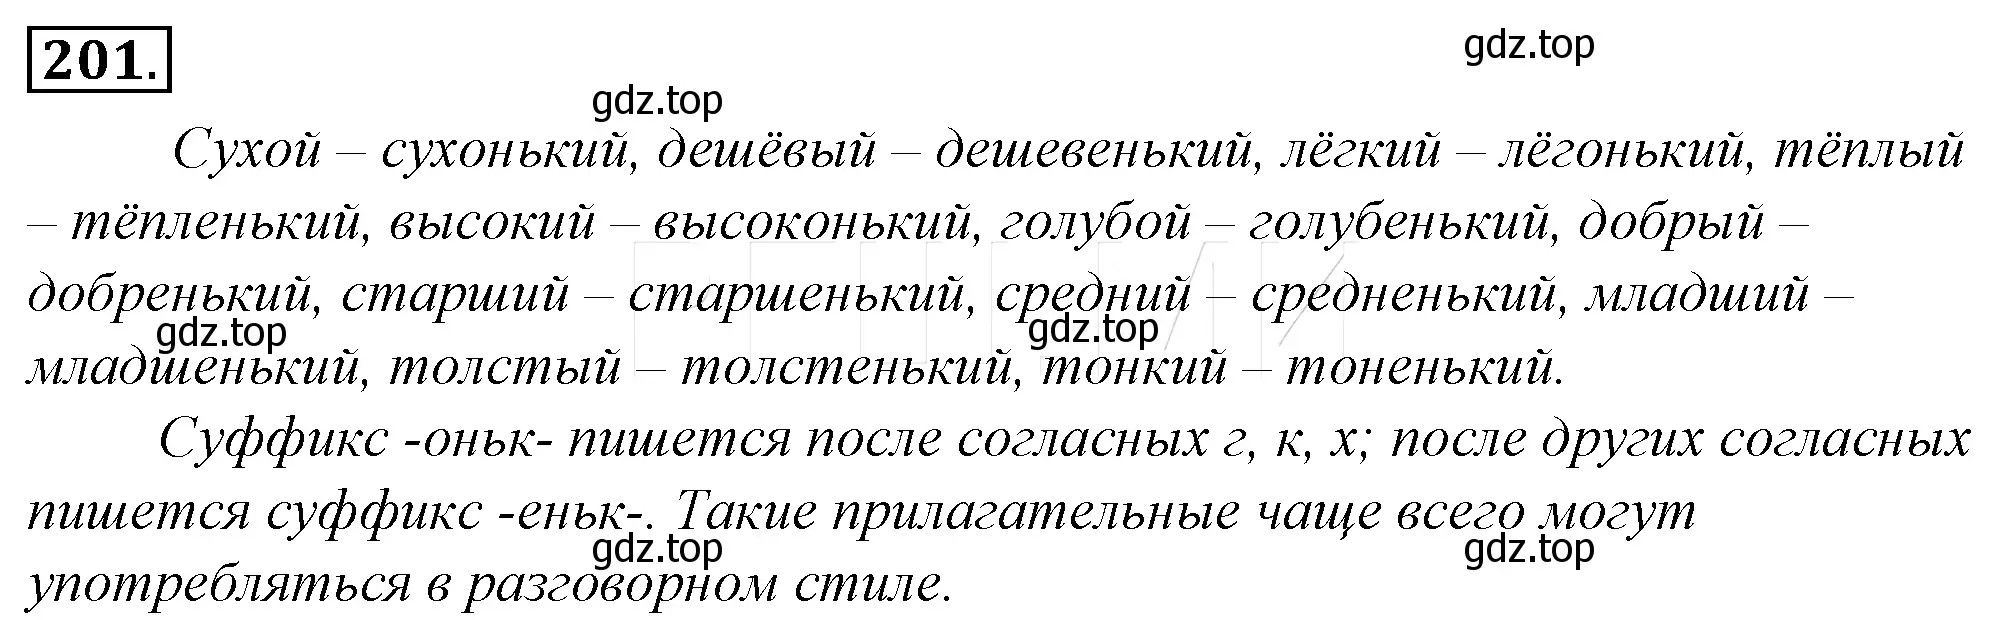 Решение 4. номер 225 (страница 210) гдз по русскому языку 10-11 класс Гольцова, Шамшин, учебник 1 часть